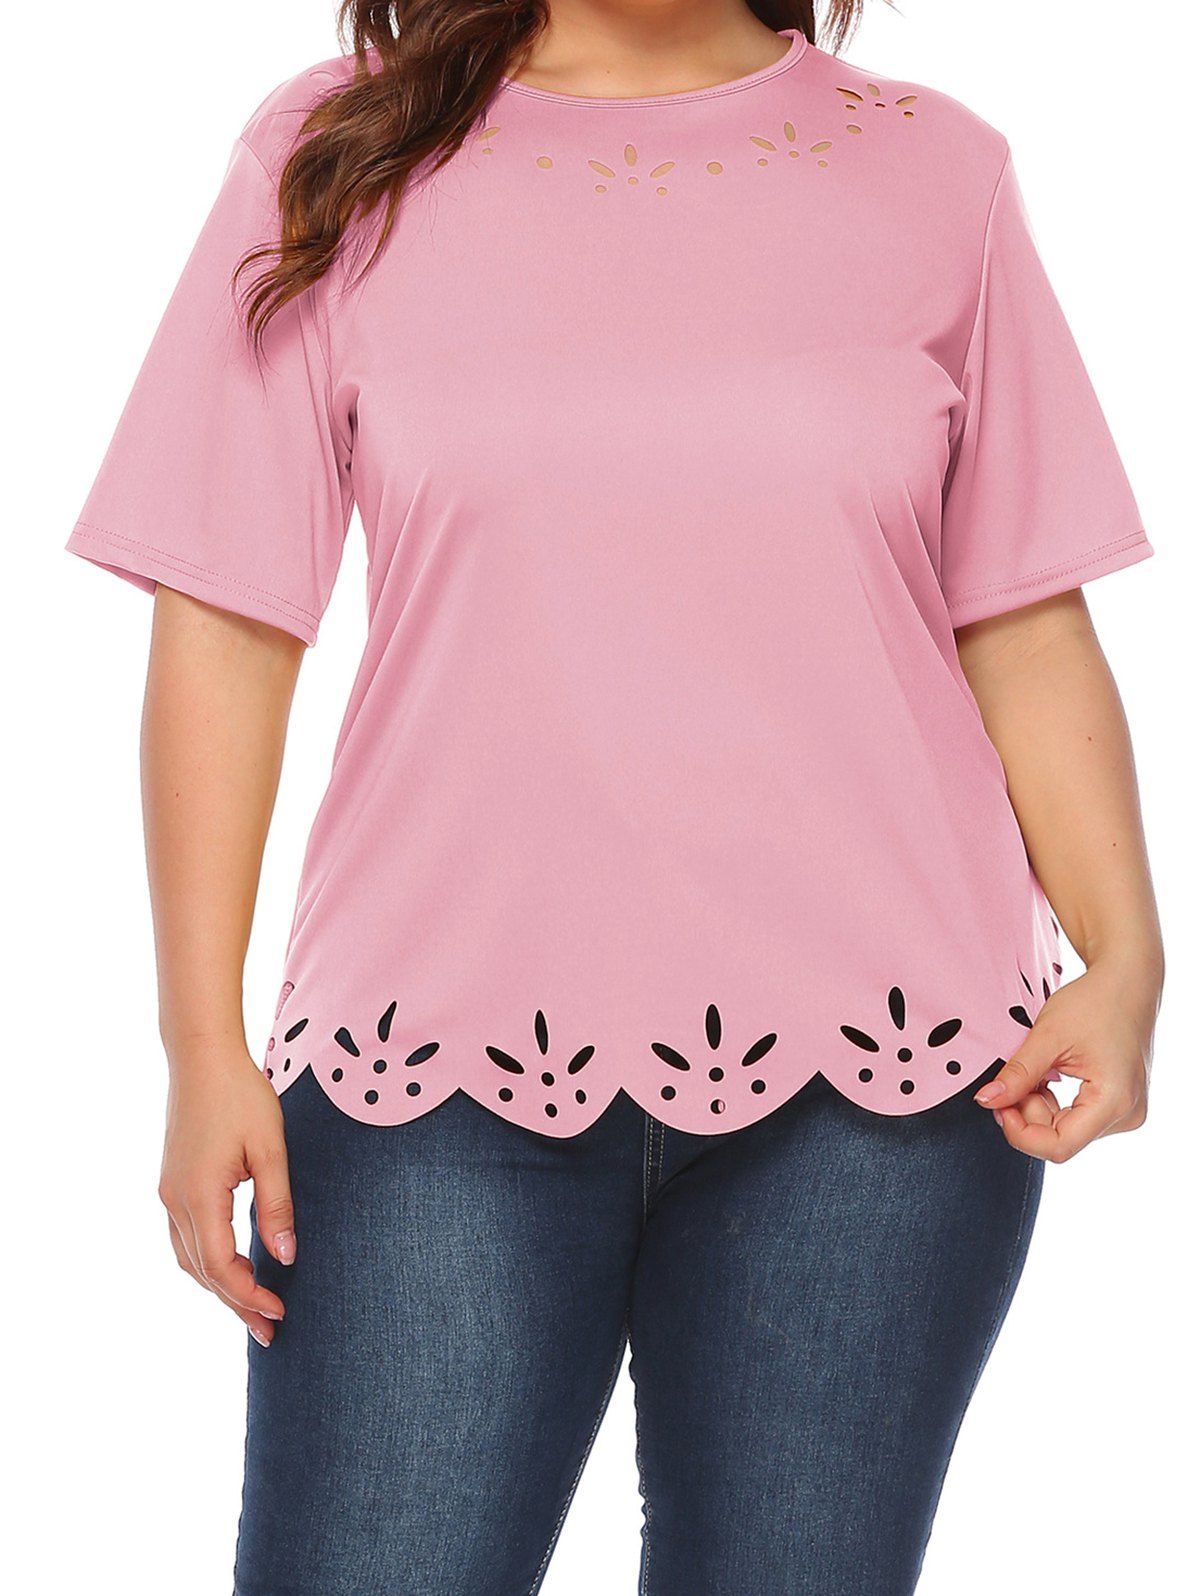 T-shirt Décontracté Festonné Découpé en Couleur Unie de Grande Taille - Rose clair 1XL